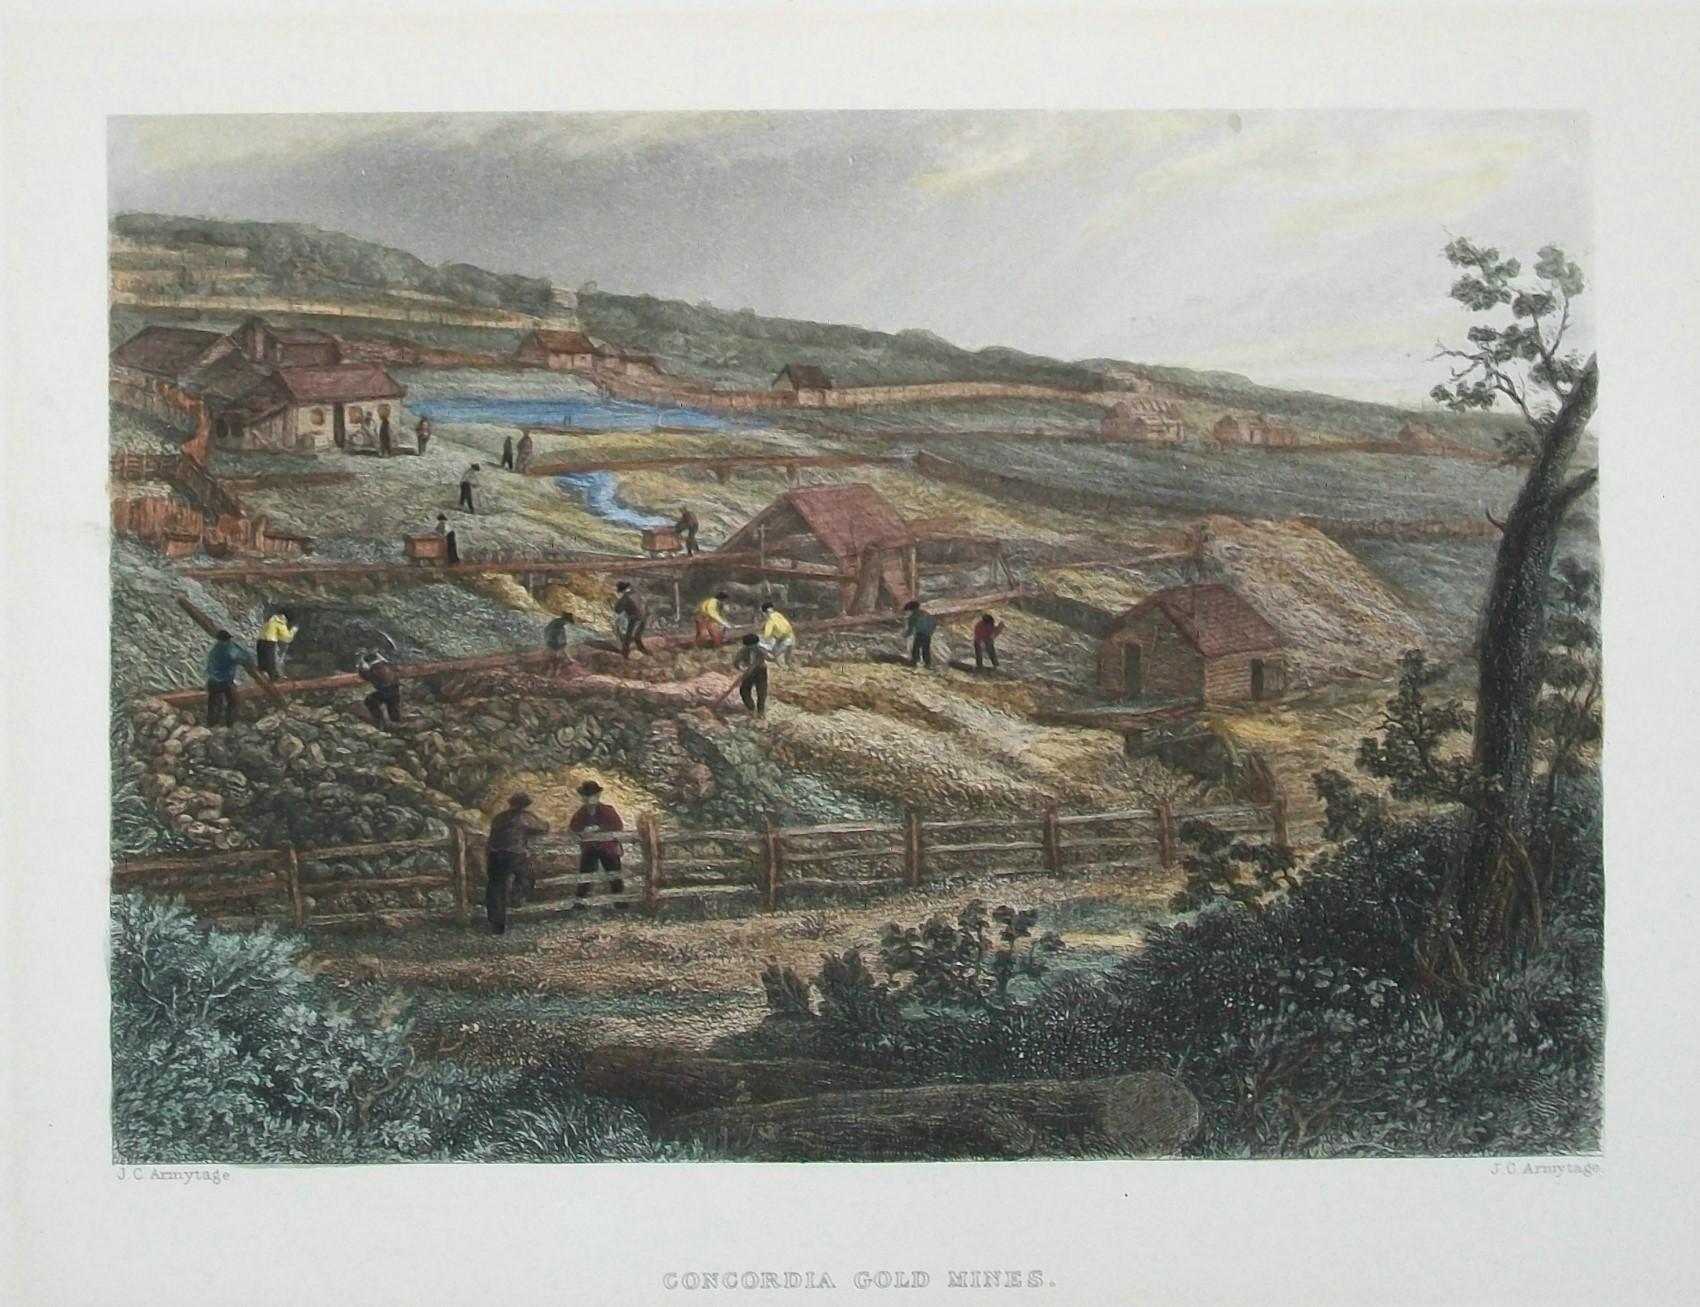 JAMES CHARLES ARMYTAGE (1820-1897) - 'Concordia Gold Mines' - Antiker Stahlstich aus 'Australia' von Edwin Carton Booth's - handkoloriert - unten mittig betitelt - rechts unten signiert - Vereinigtes Königreich - um 1874.

Ausgezeichneter antiker